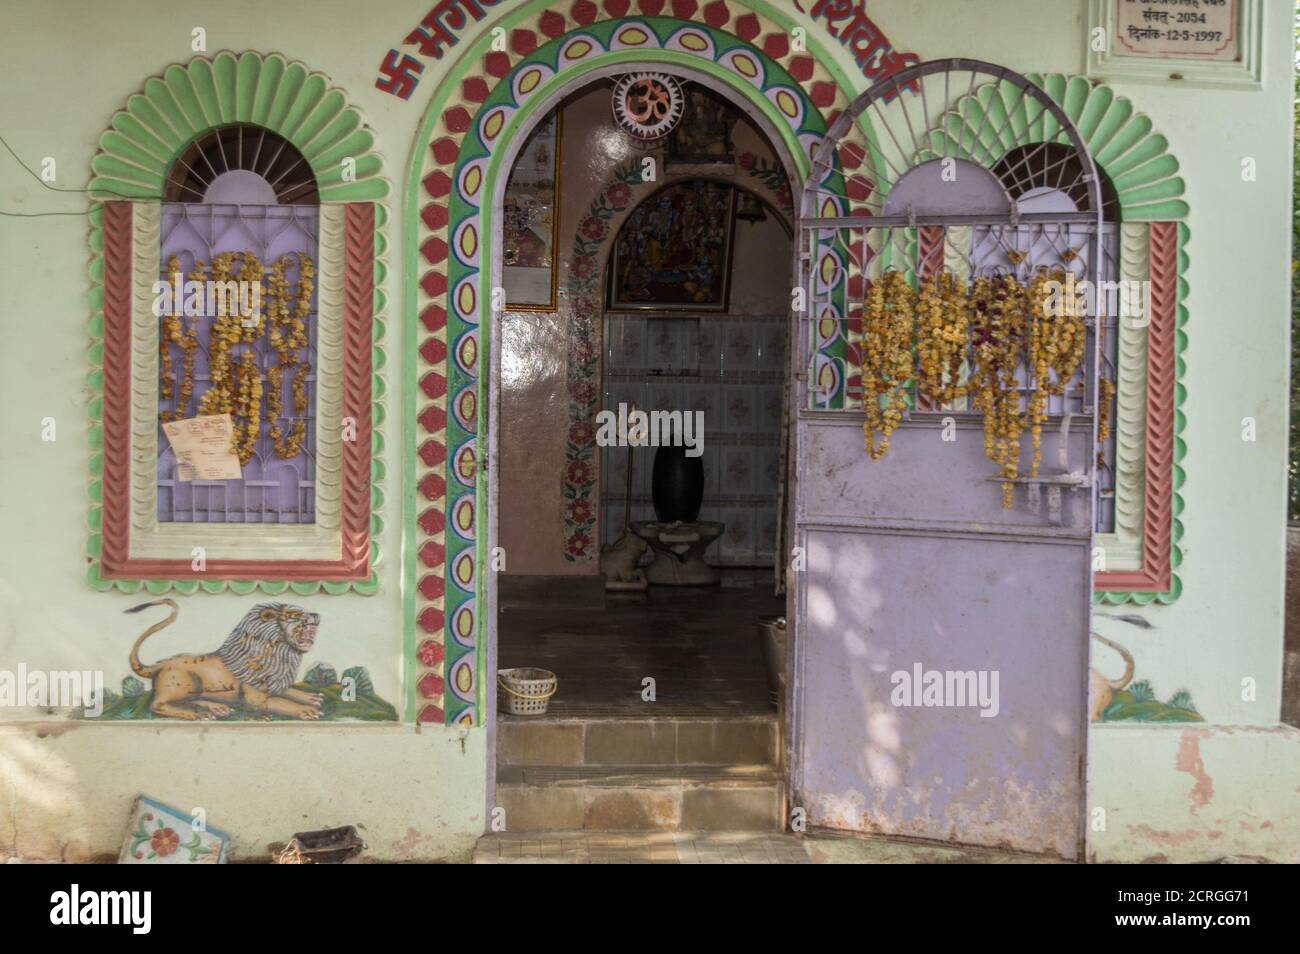 Un tempio del Signore Shiva presso il village bhad, Madhya Pradesh, India. Foto Stock